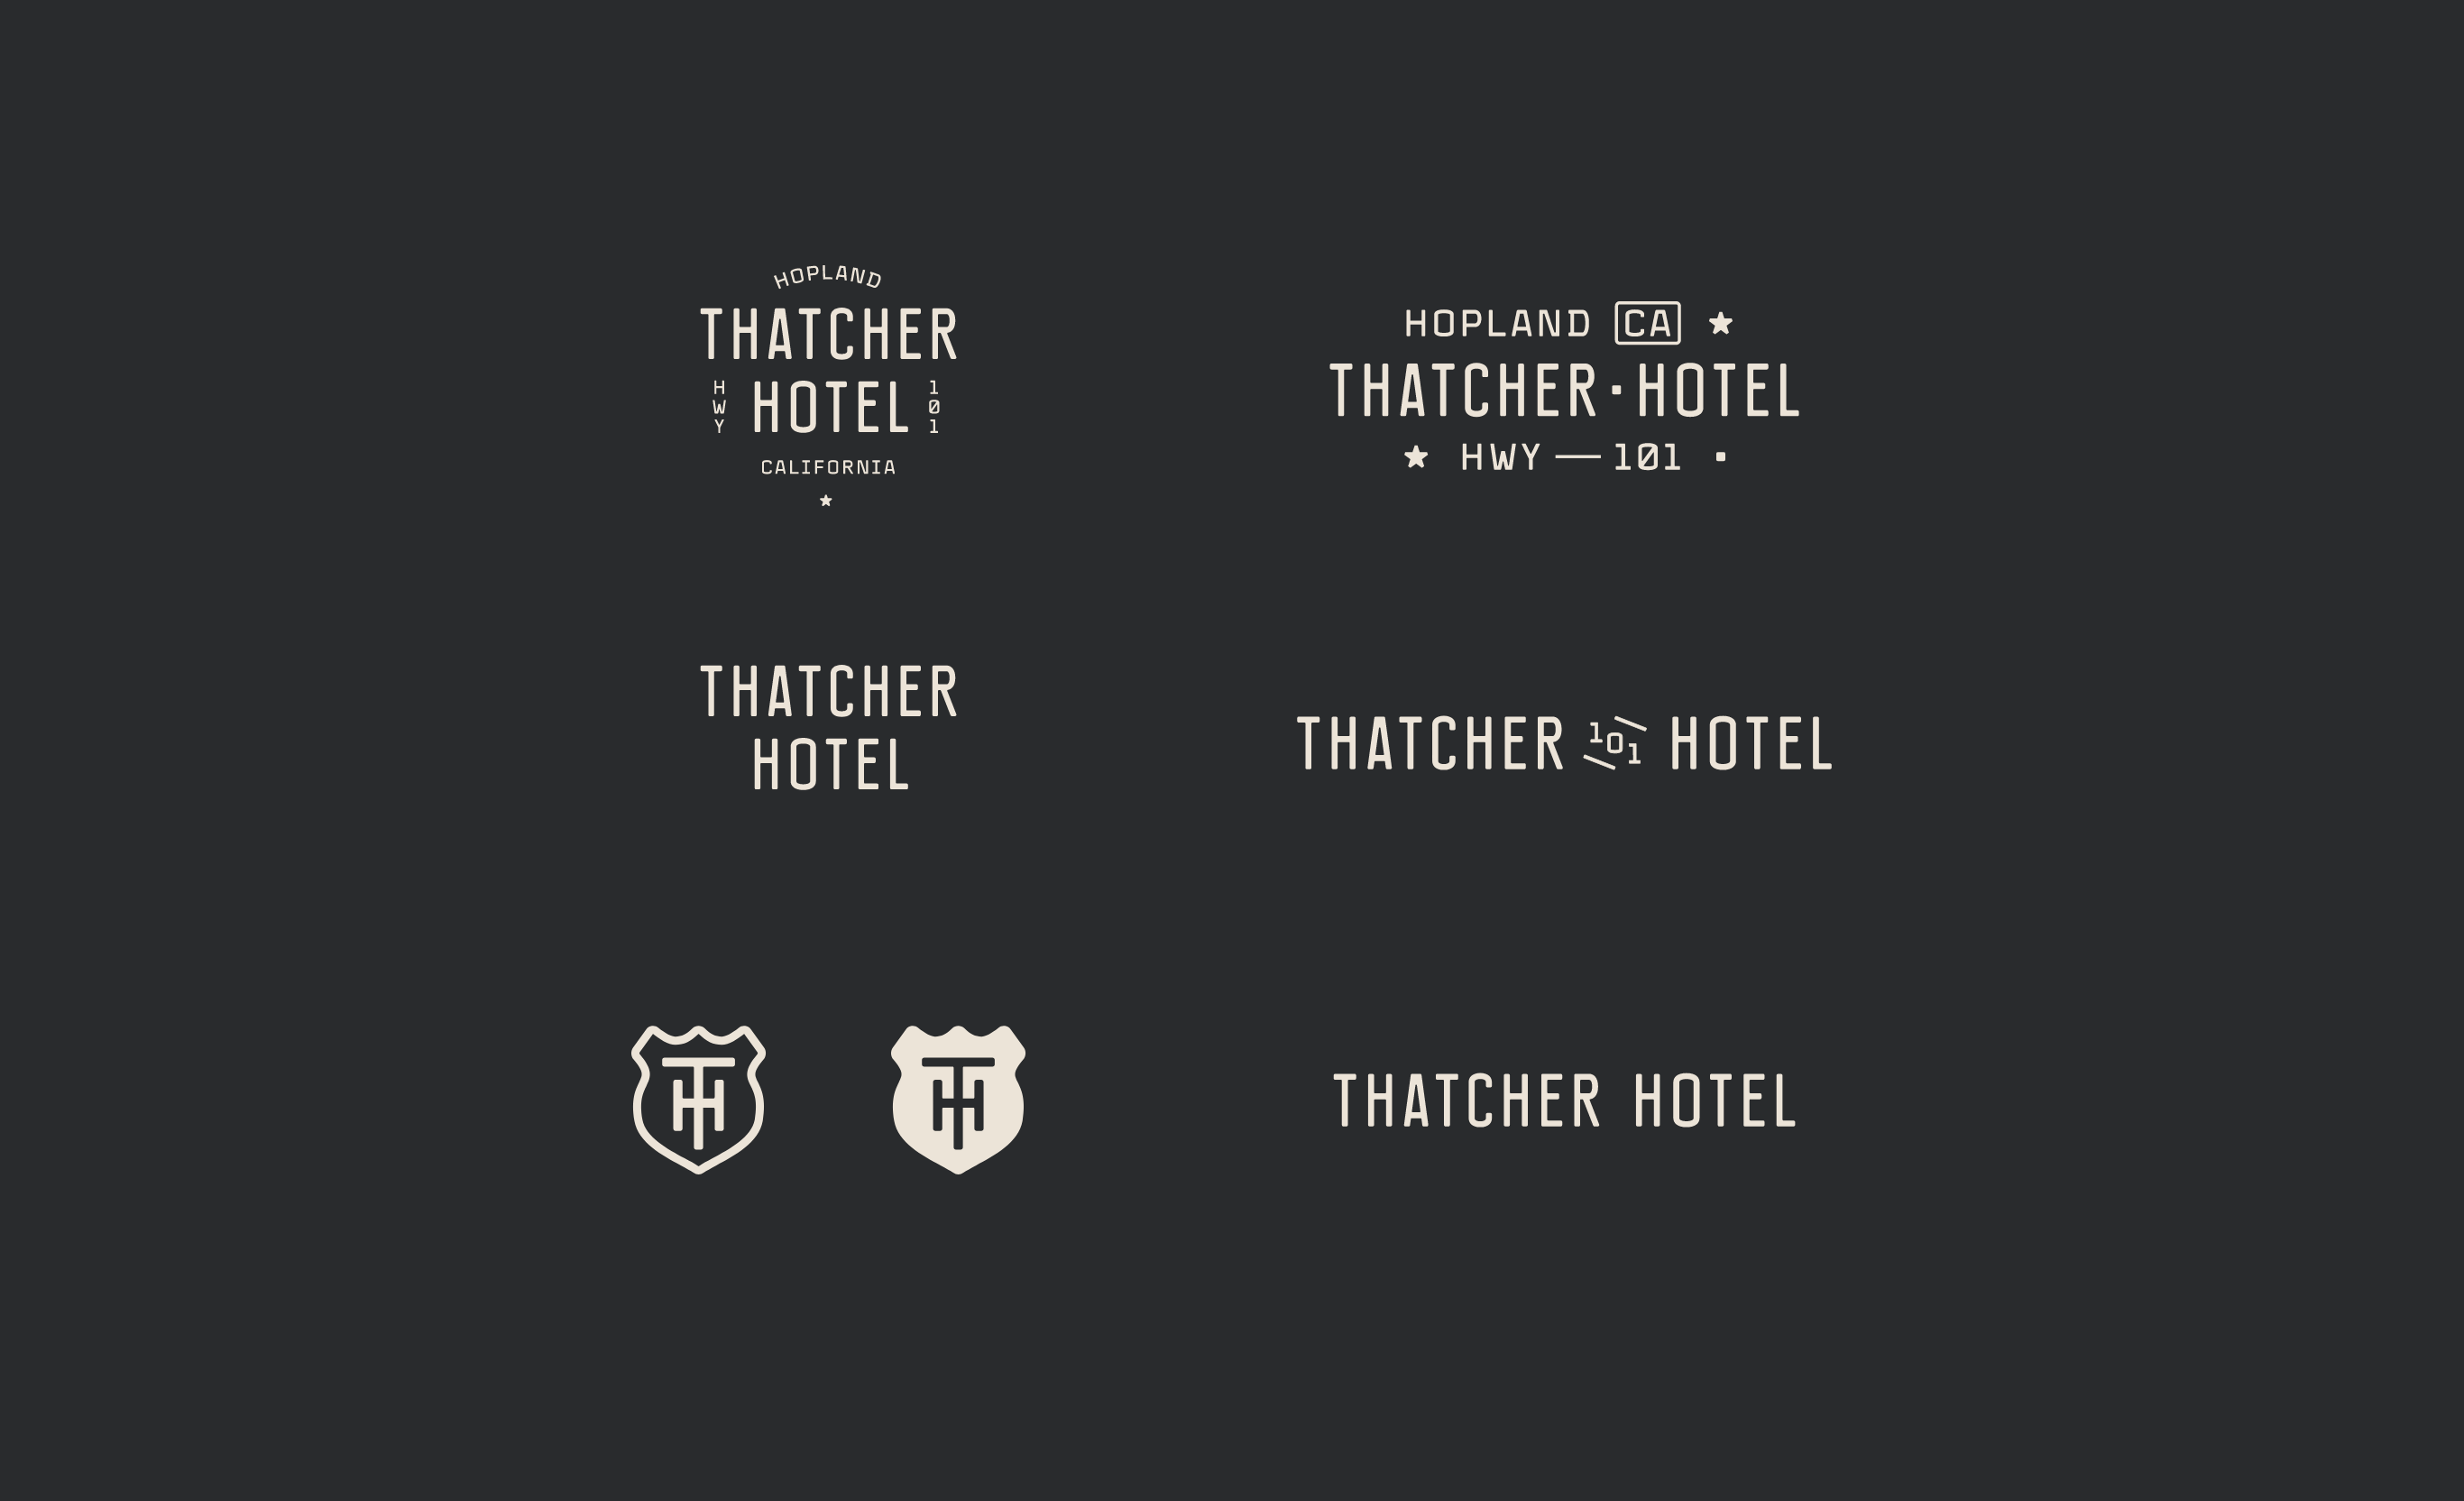 Thatcher Hotel logo lockups